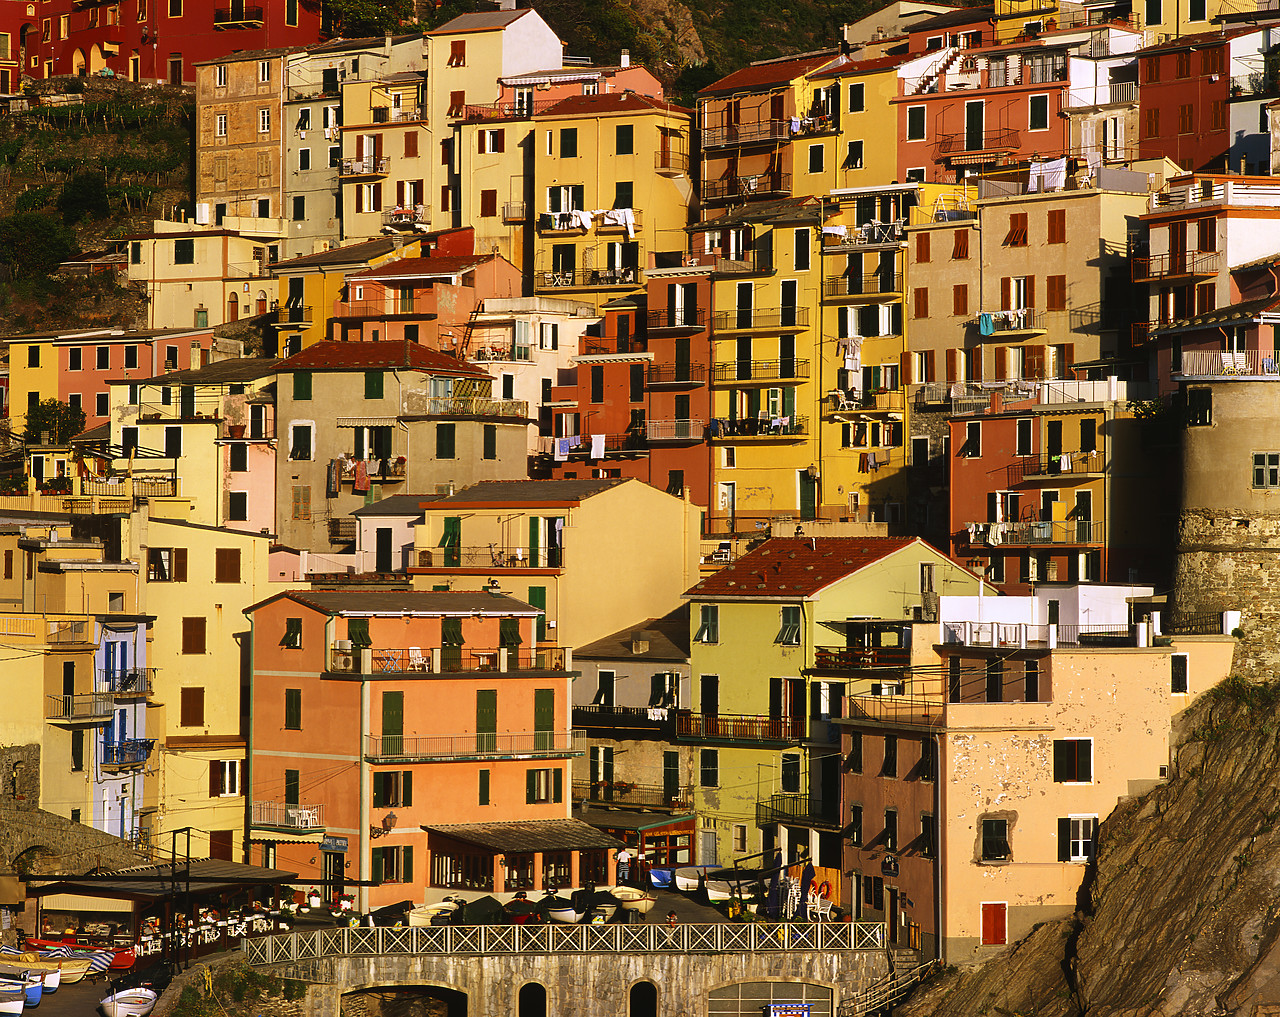 #020162-1 - Colourful Building Patterns, Manarola, Cinque Terre, Italy